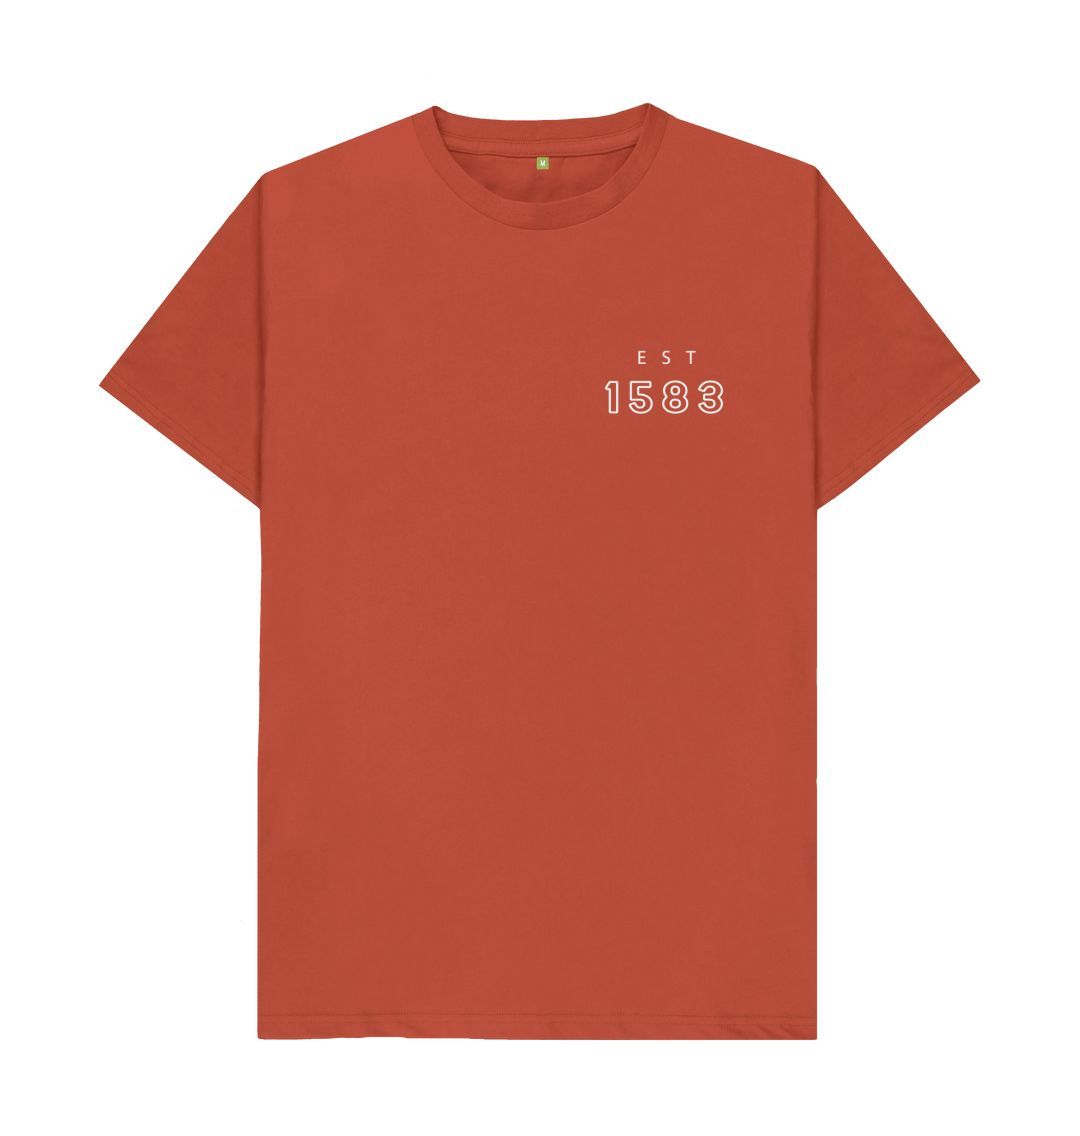 Rust Teviot Row House Coordinates Design T-Shirt